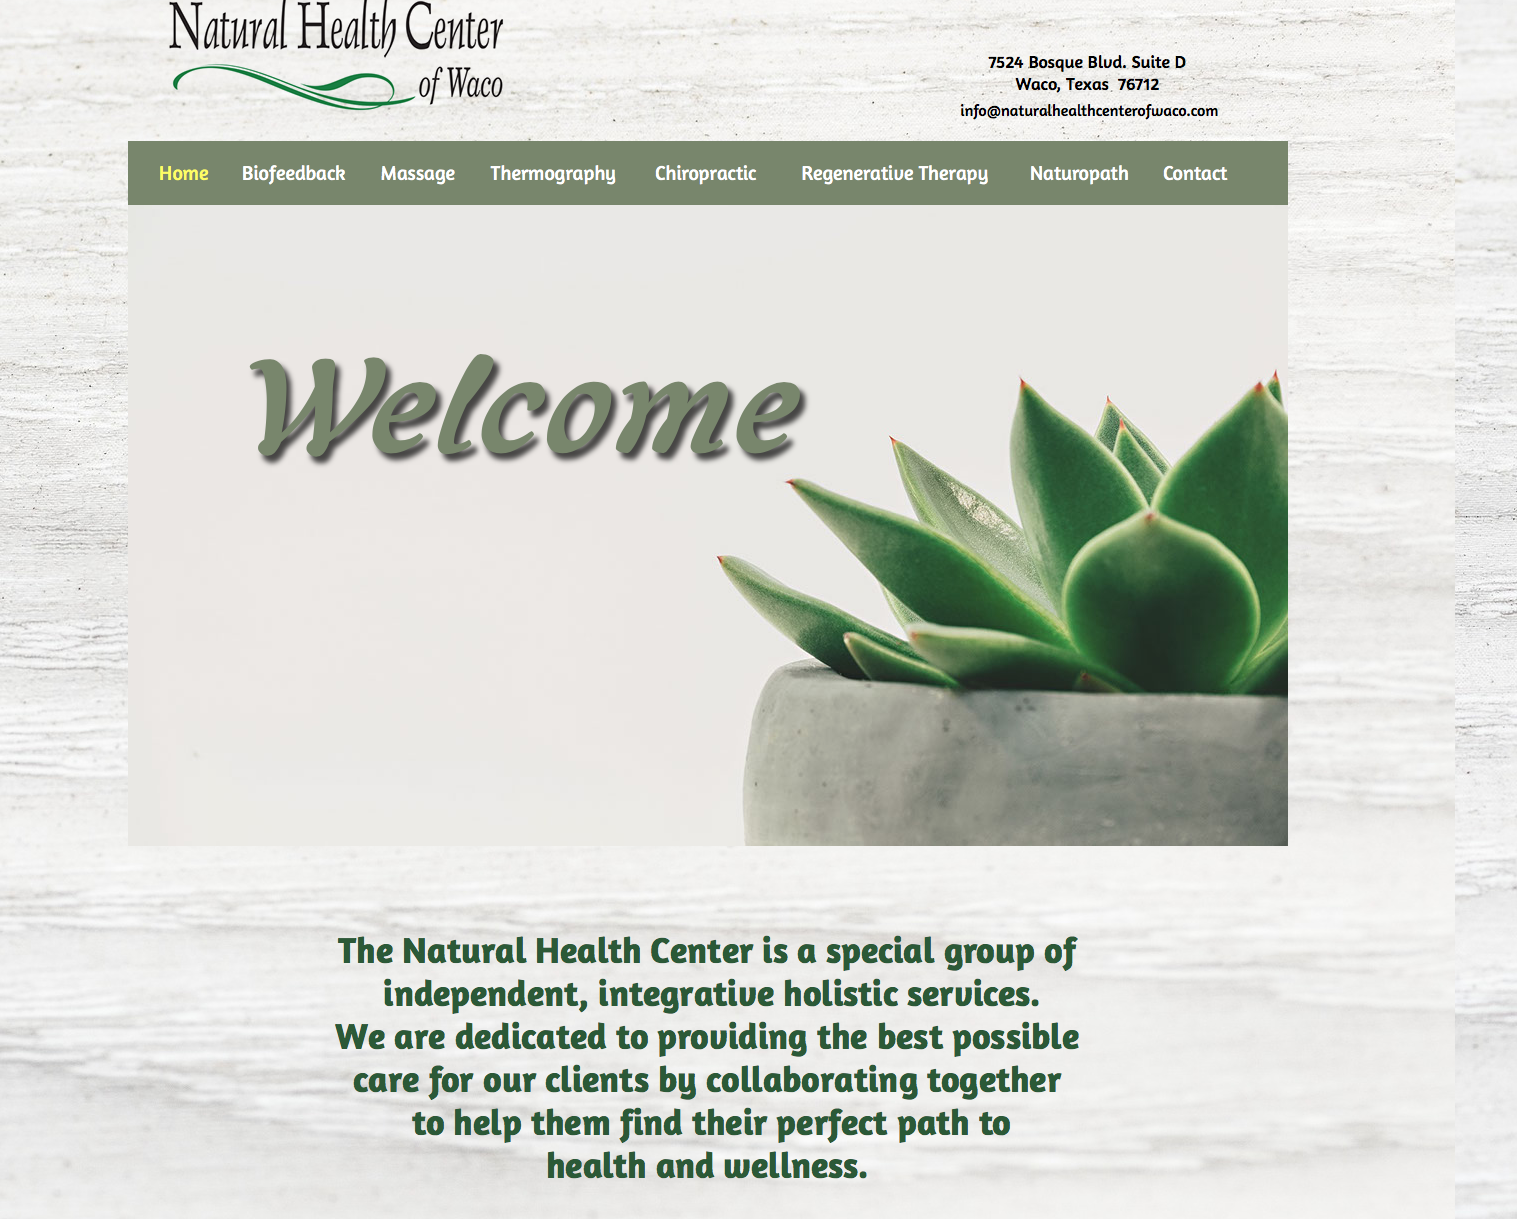 www.naturalhealthcenterofwaco.com